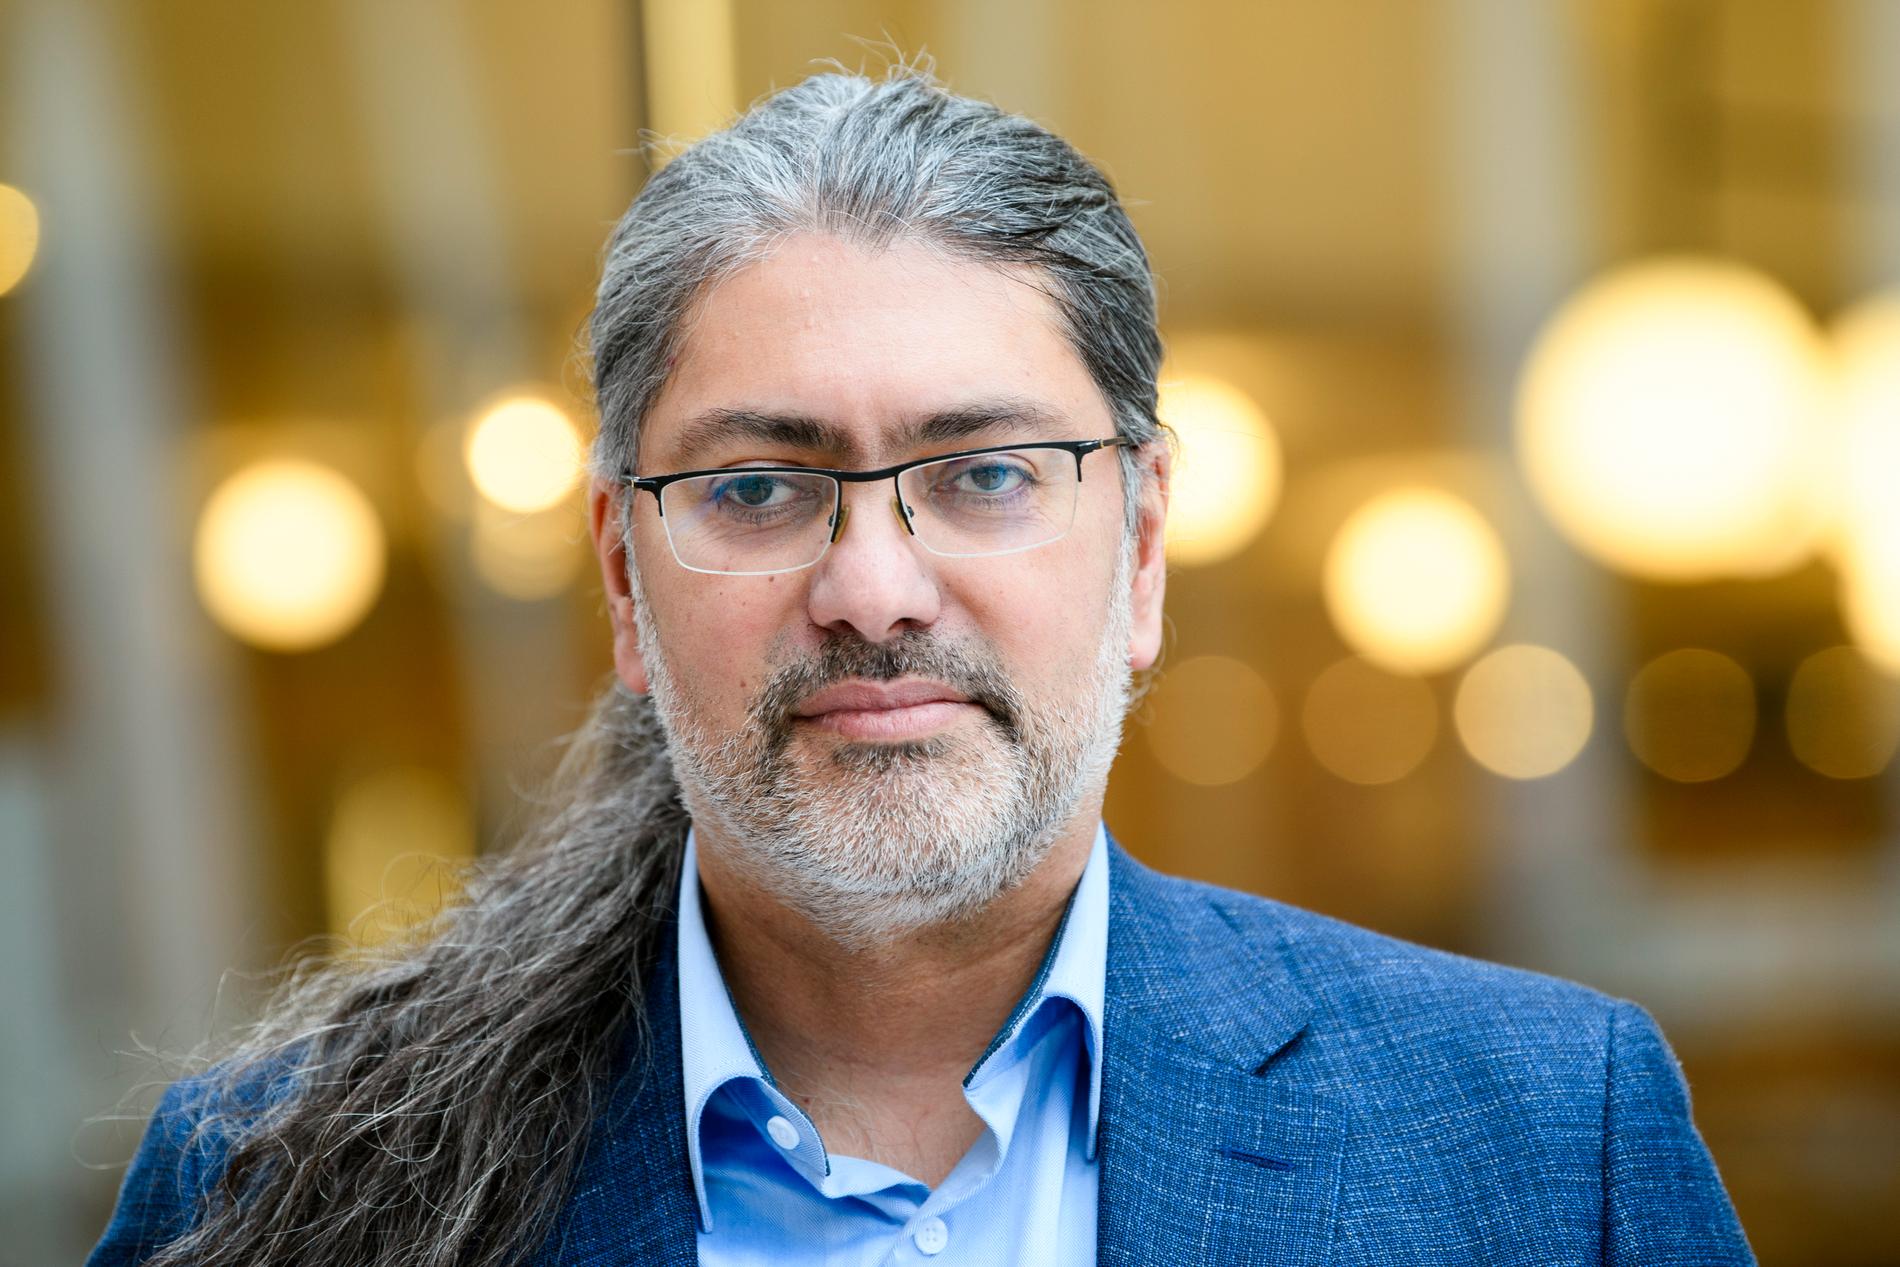 Ali Mirazimi, professor i klinisk virologi vid Karolinska institutet.